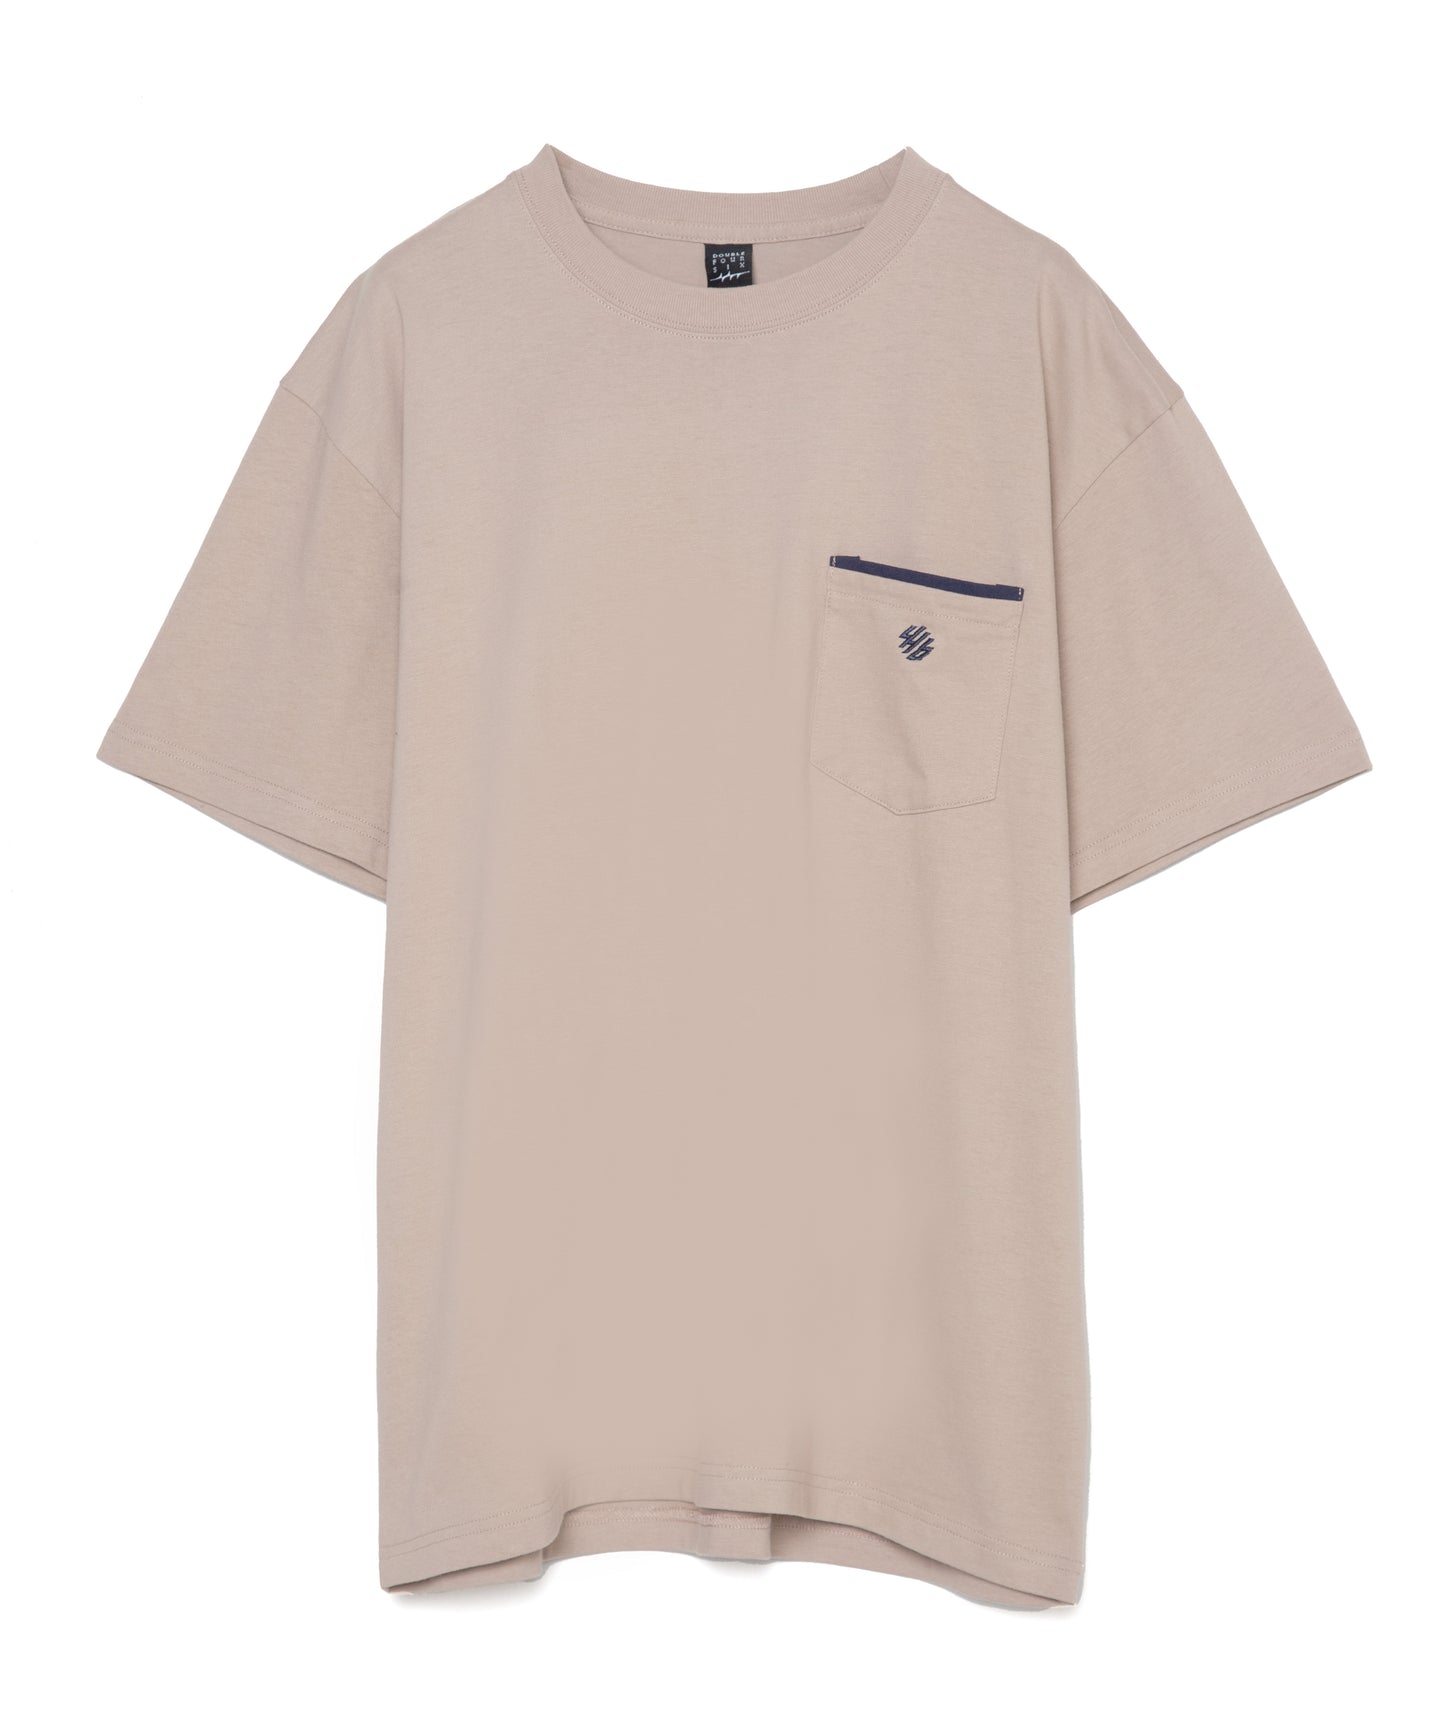 446-Bicolor Pocket T-shirt Beige